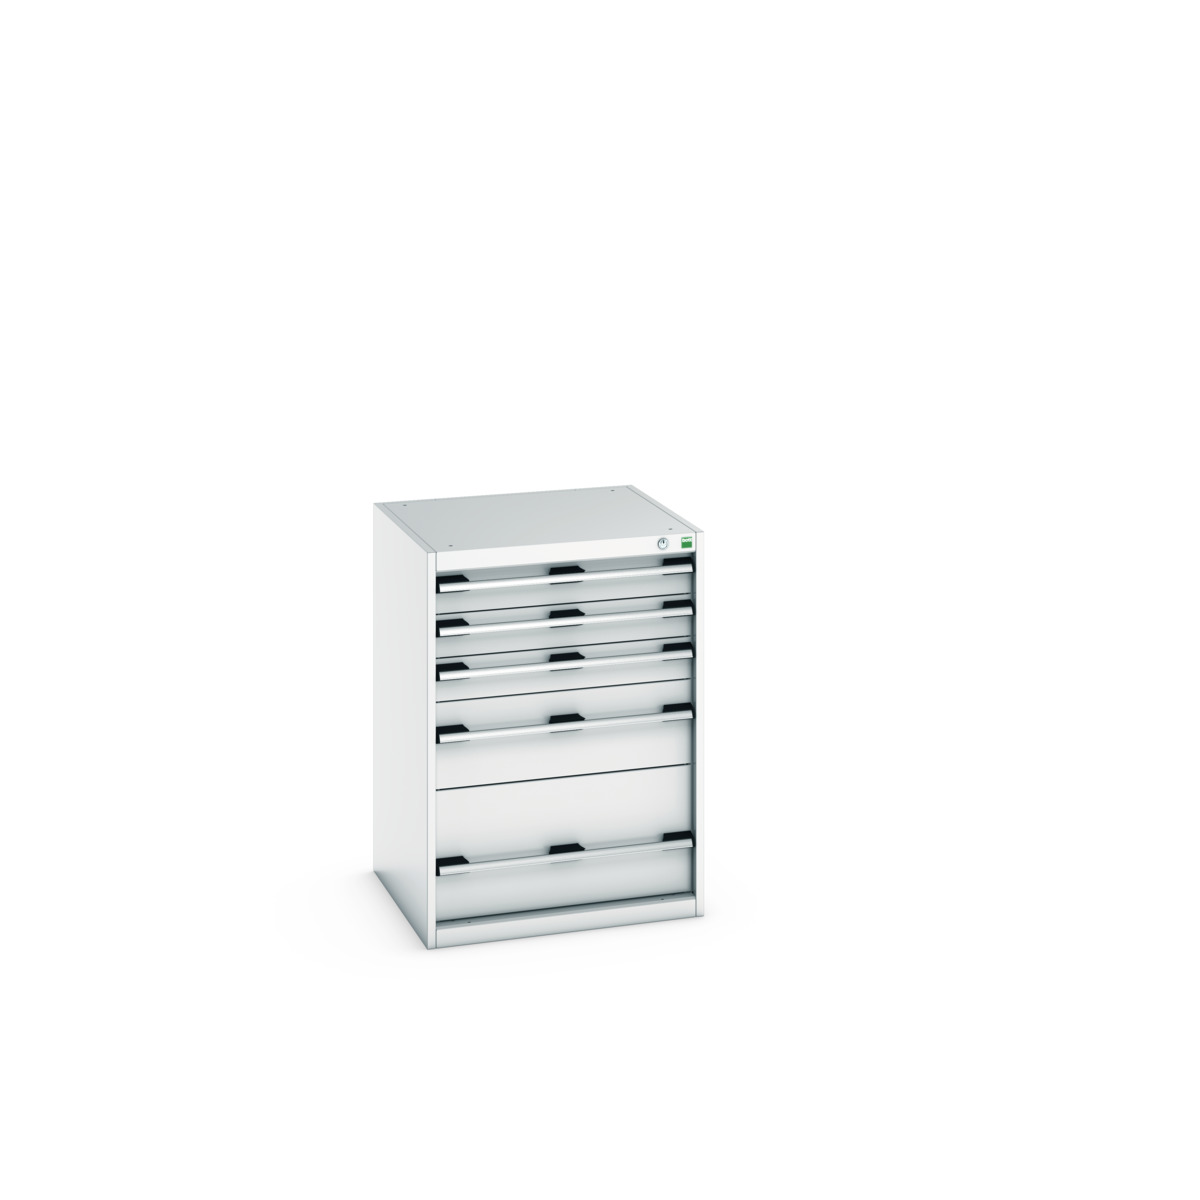 40019045.16V - cubio drawer cabinet